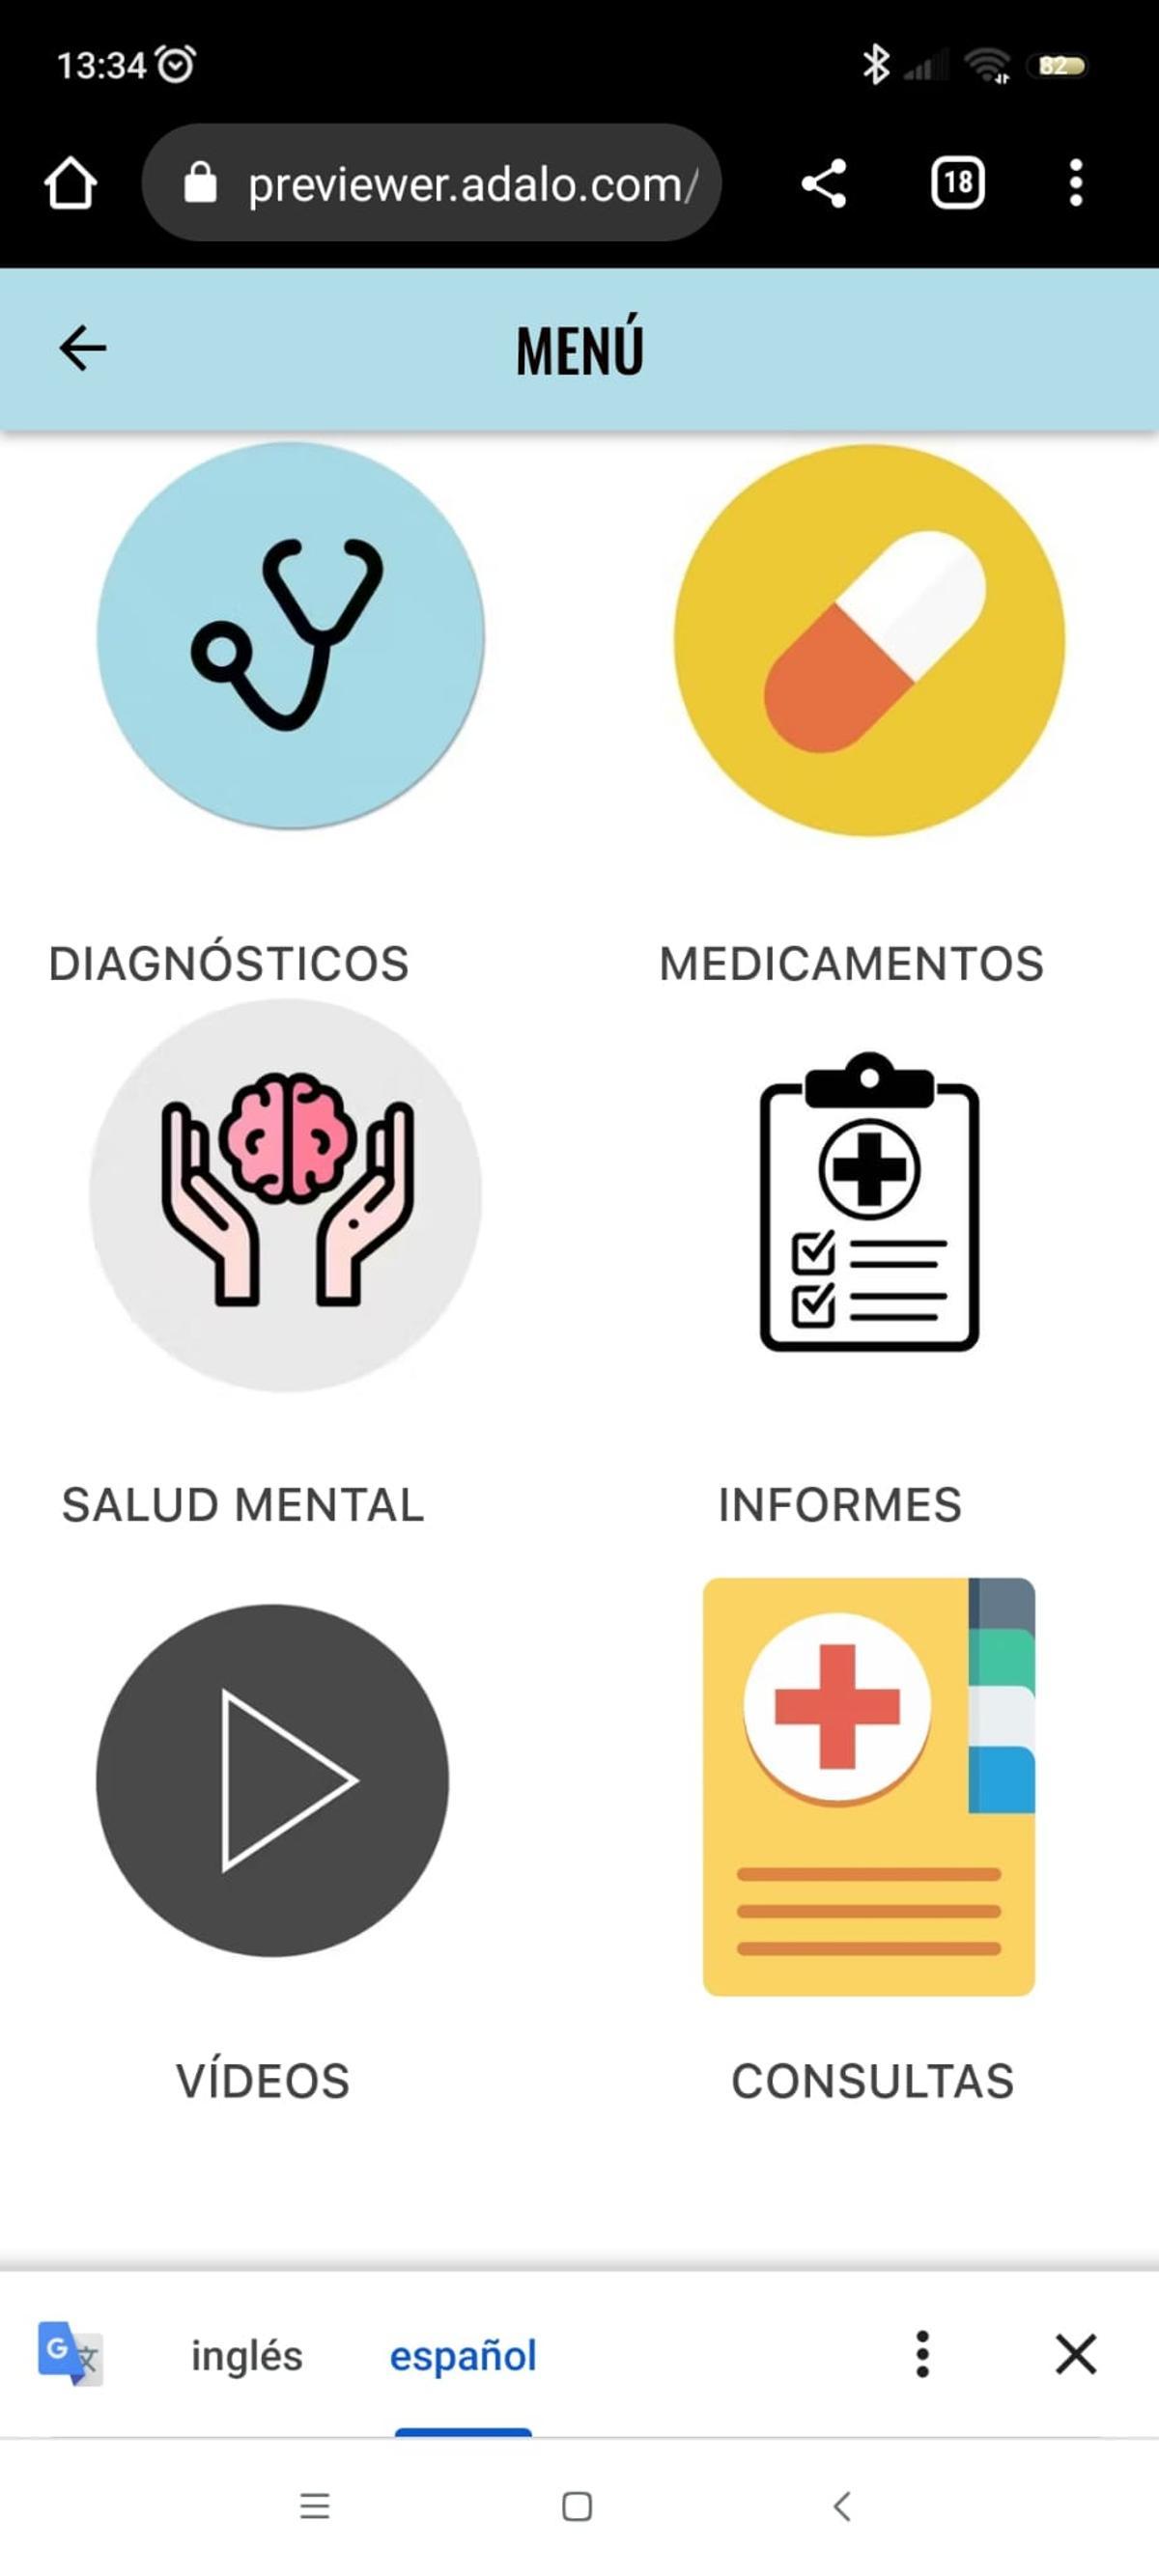 Imagen de la app sobre salud